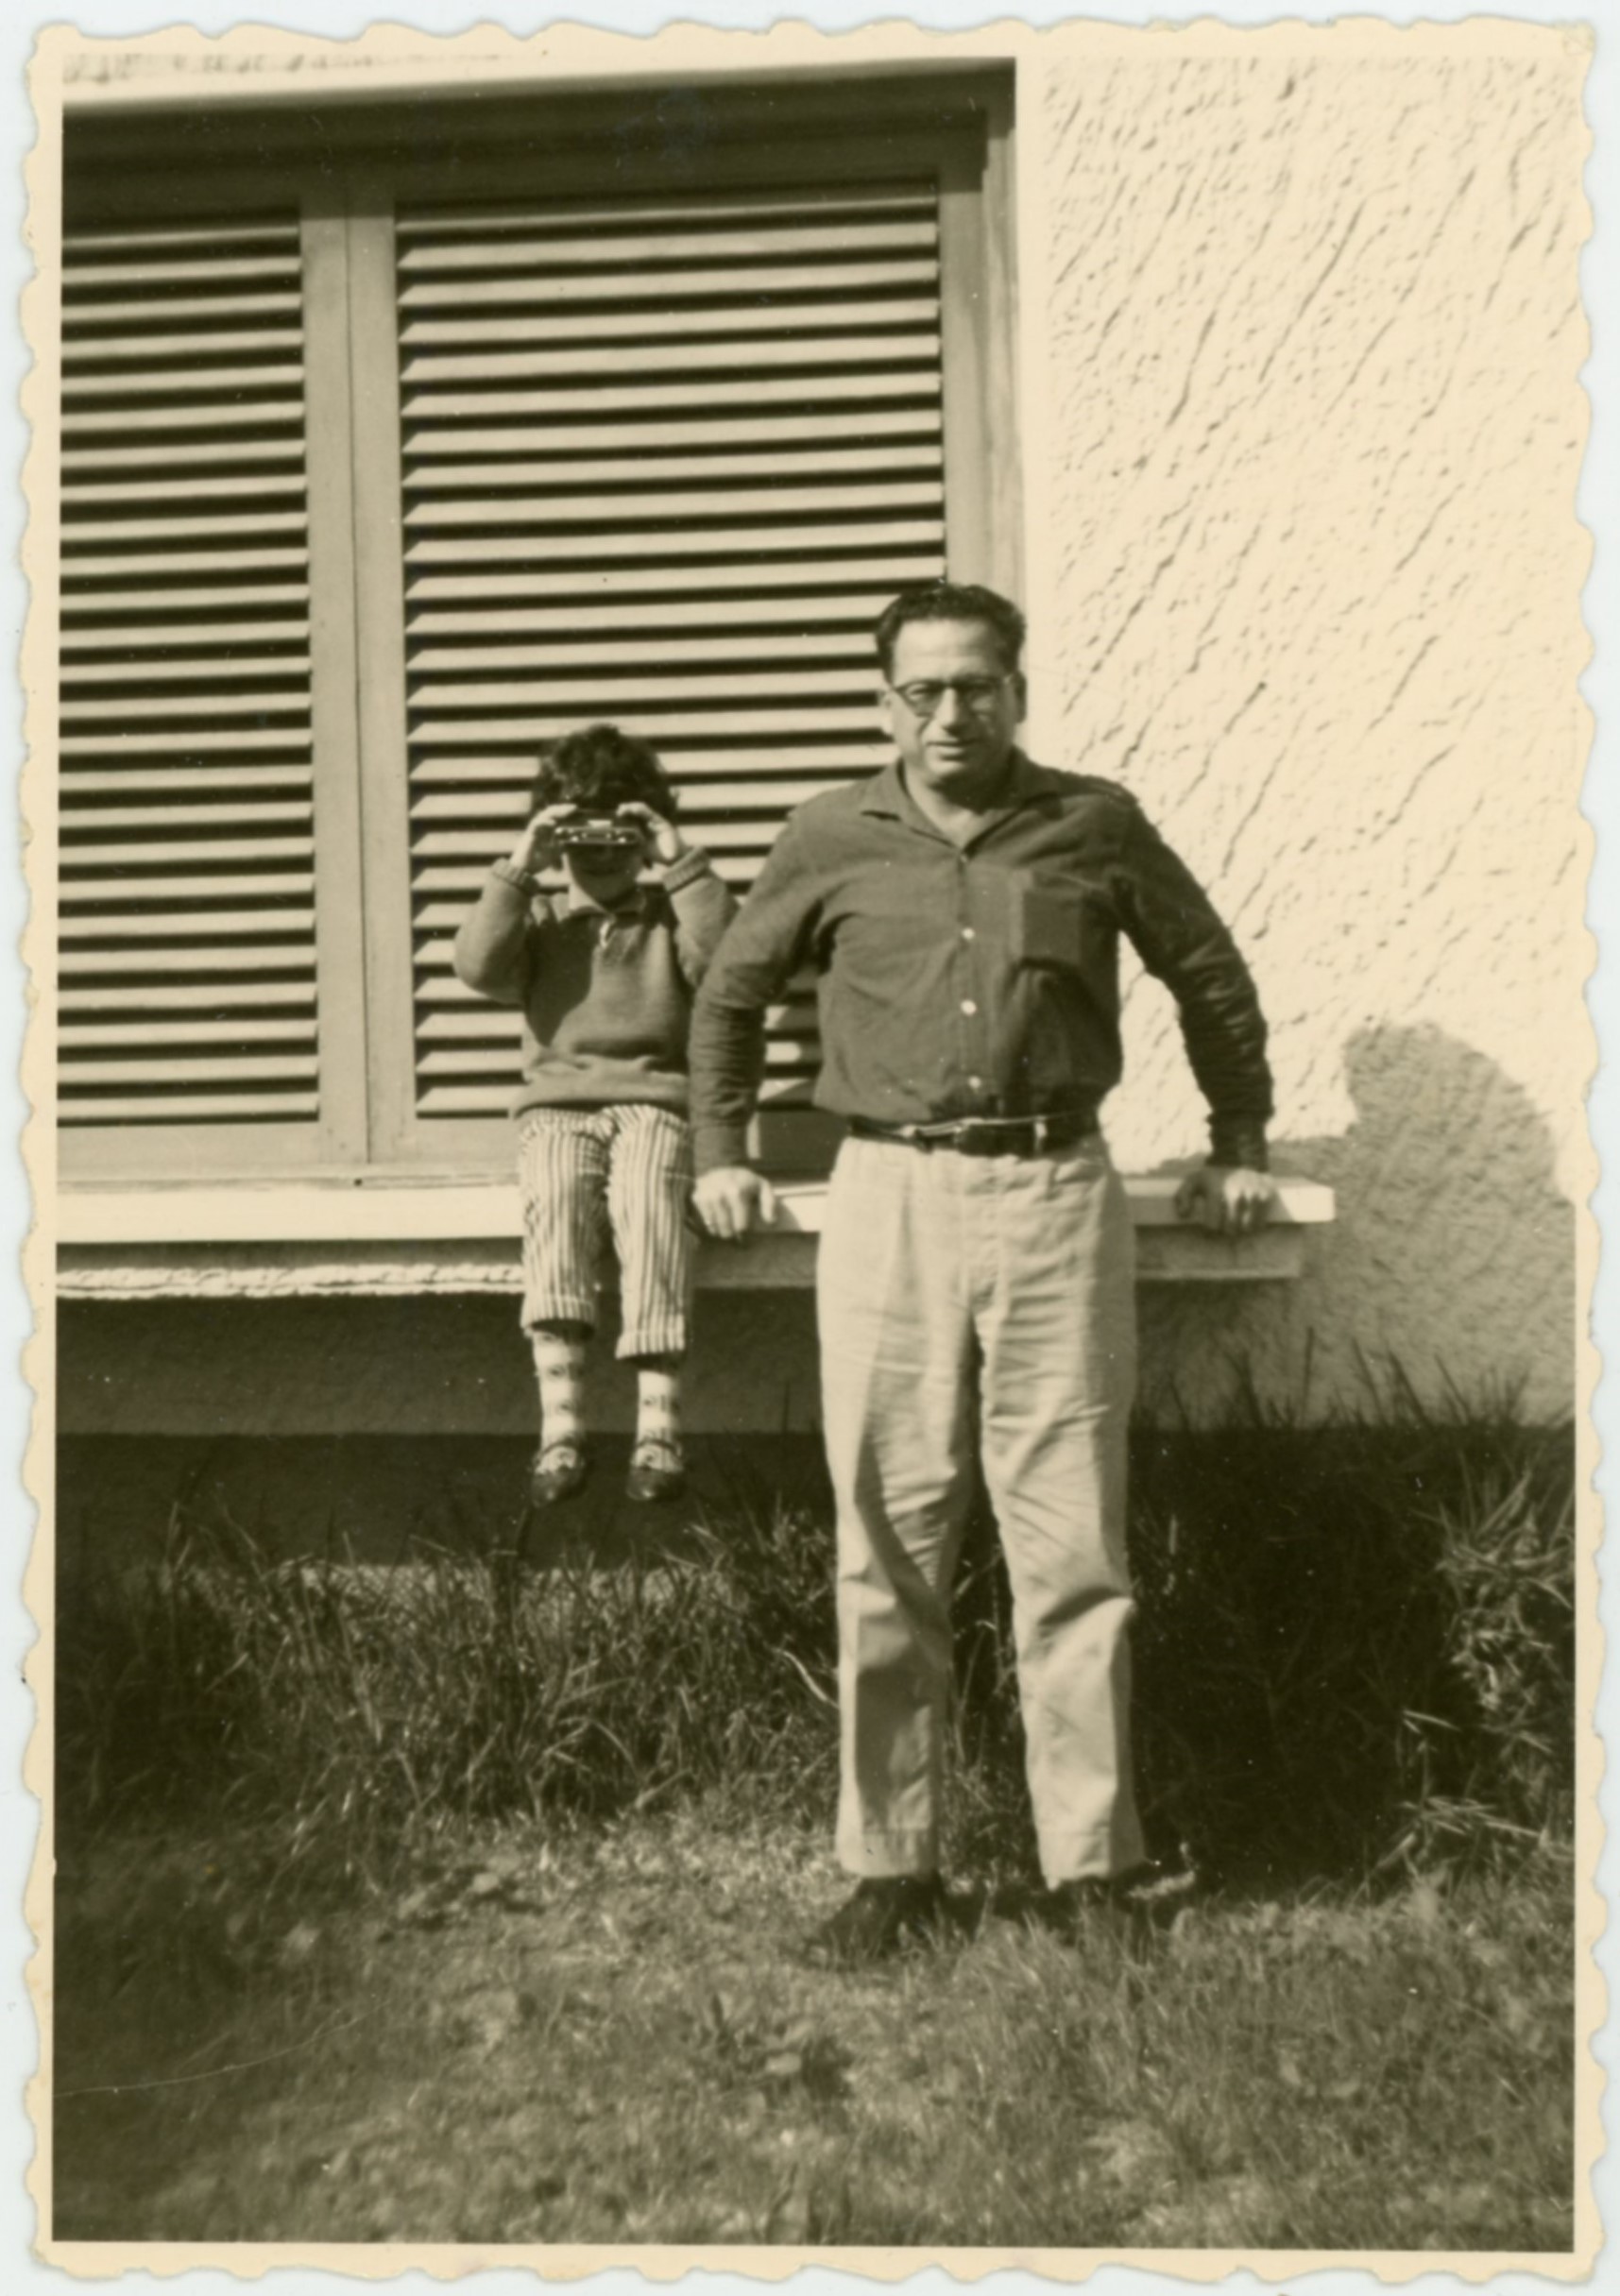 זאב איצקוביץ ובתו רחלה, בחצר בית המשפחה ברחוב בר אילן 35, 1962